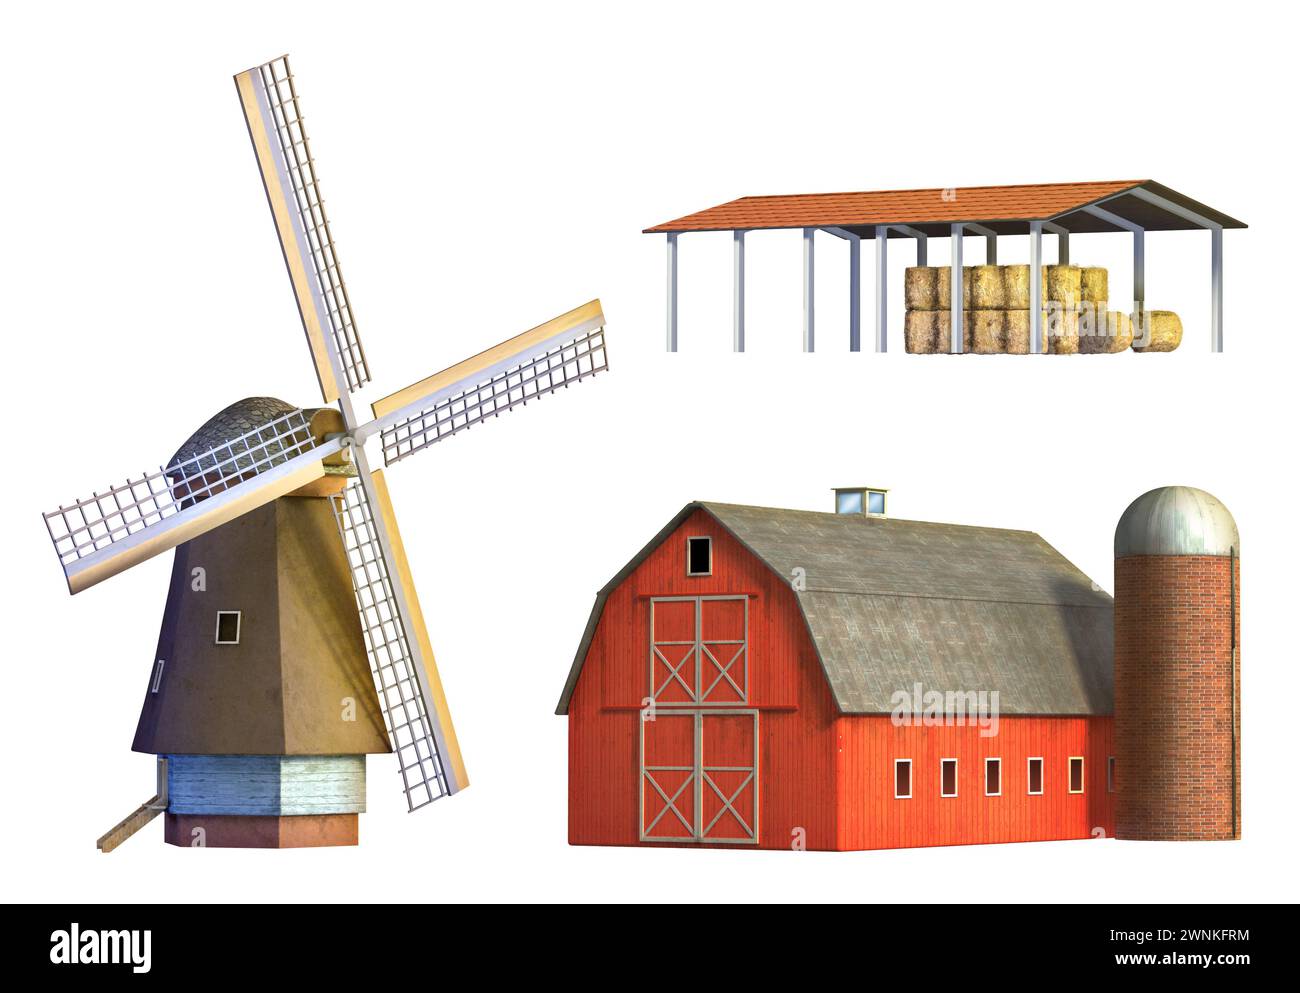 Différents exemples d'architecture rurale : moulin à vent, grange et dépôt. Illustration numérique, chemin de détourage inclus. Banque D'Images